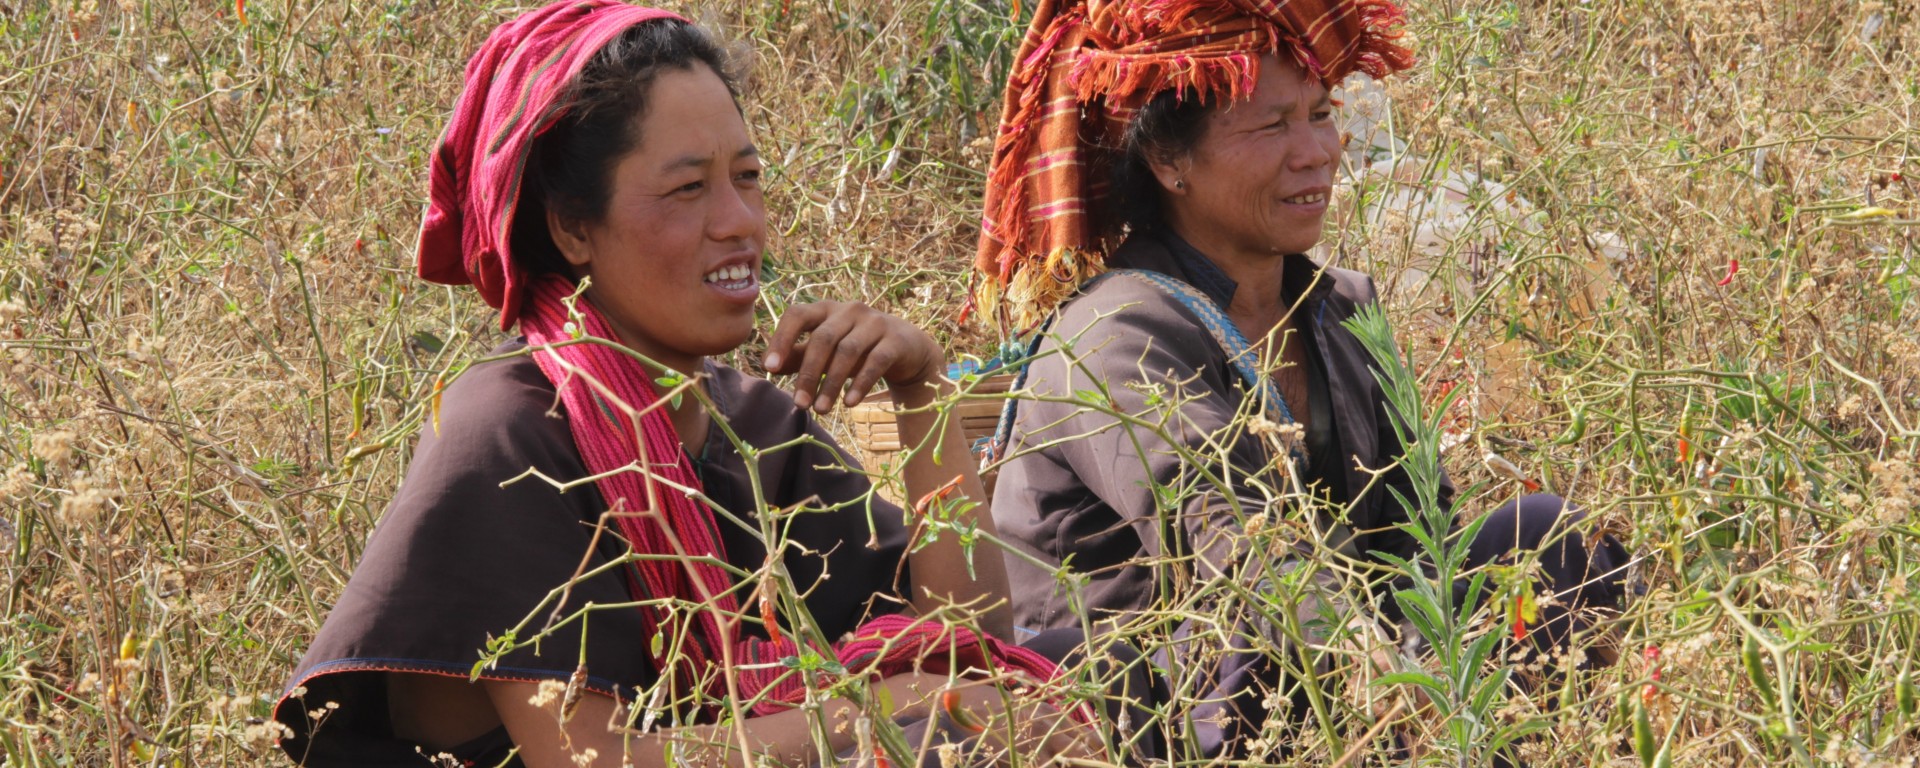 Deux femmes récoltent le chili, piment rouge qui agrémente de nombreux plats birmans (© Aurélie Bacheley).